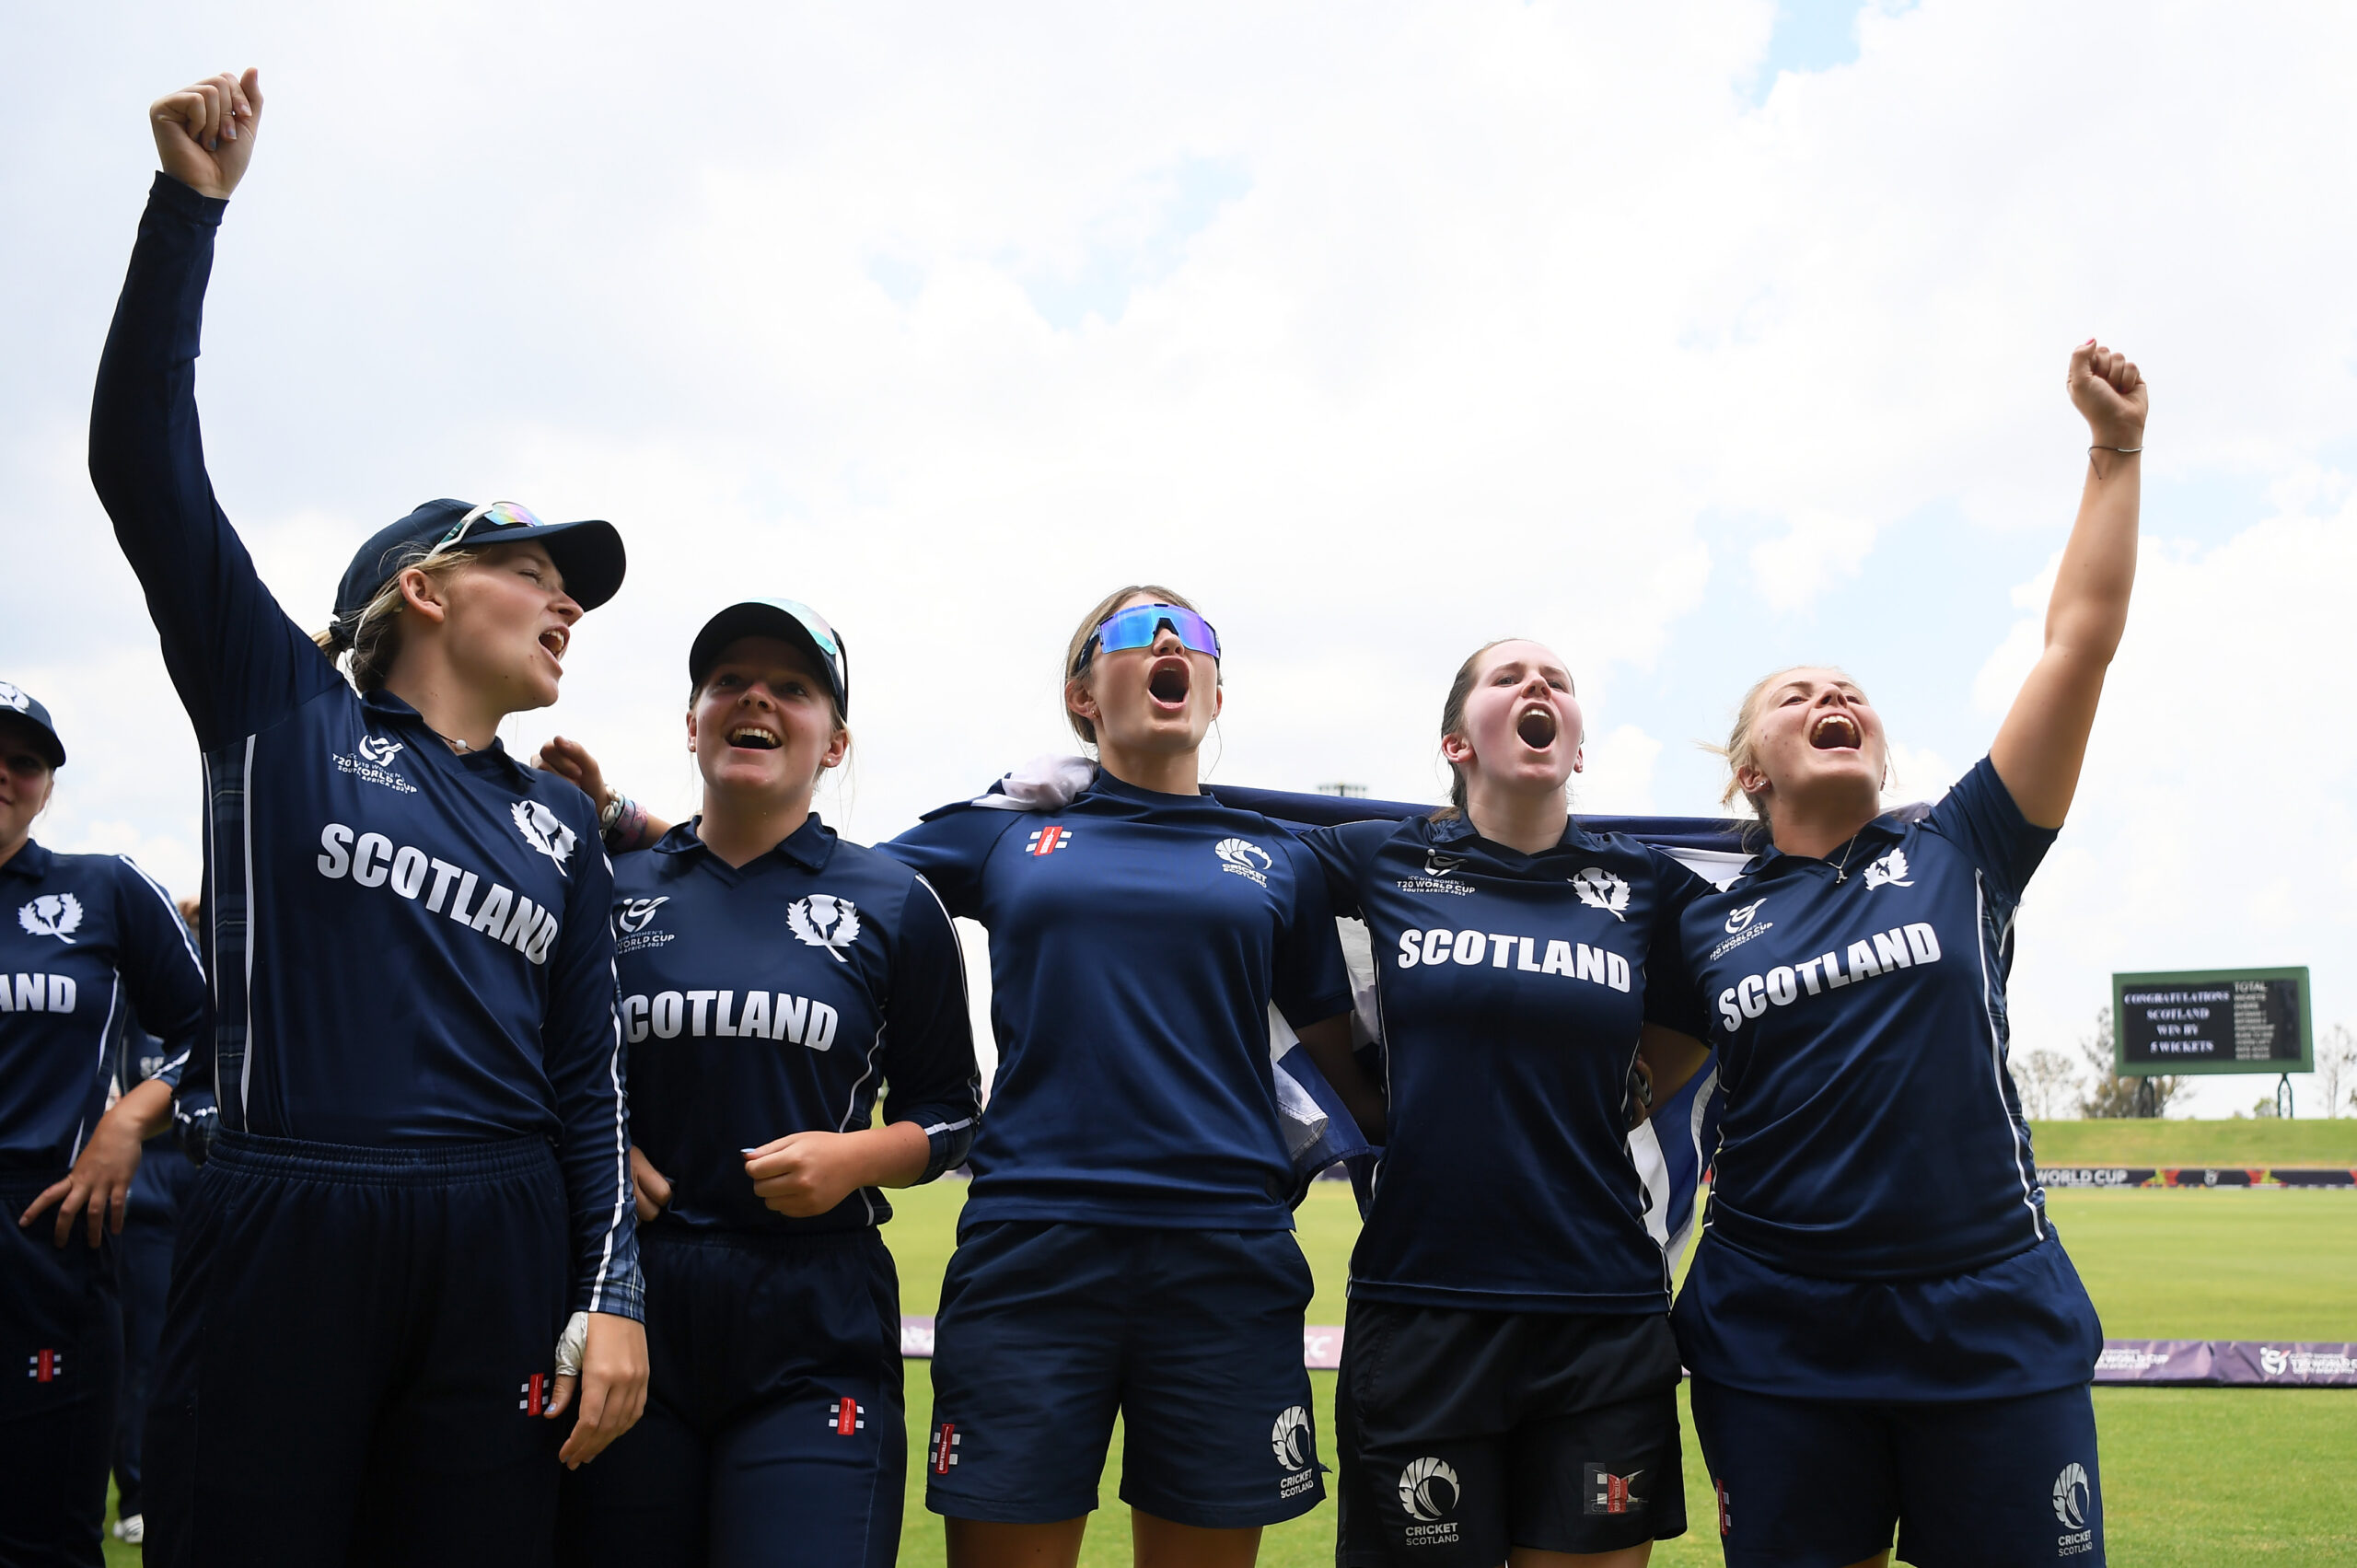 SCOTLAND TO HOST ICC U19 WOMEN’S T20 WORLD CUP EUROPE QUALIFIER